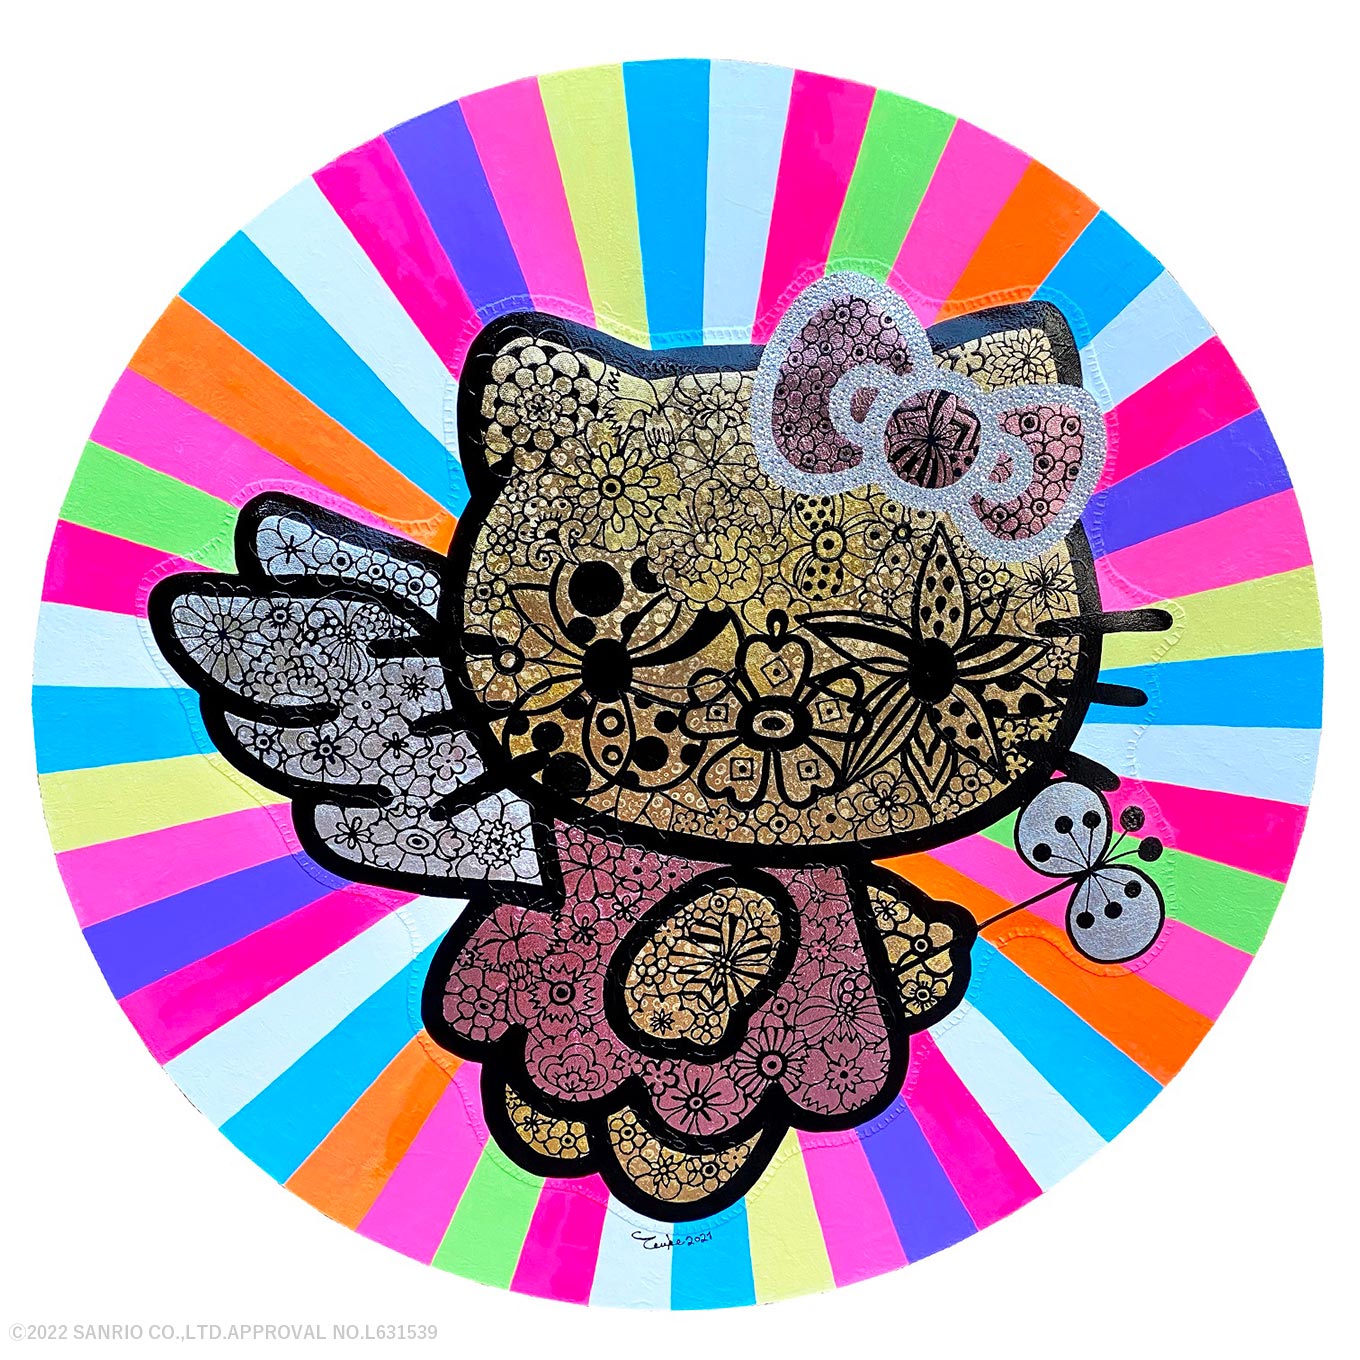 《Happy Angel Hello Kitty》ミクストメディア、スワロフスキー、キャンバス / 直径100cm